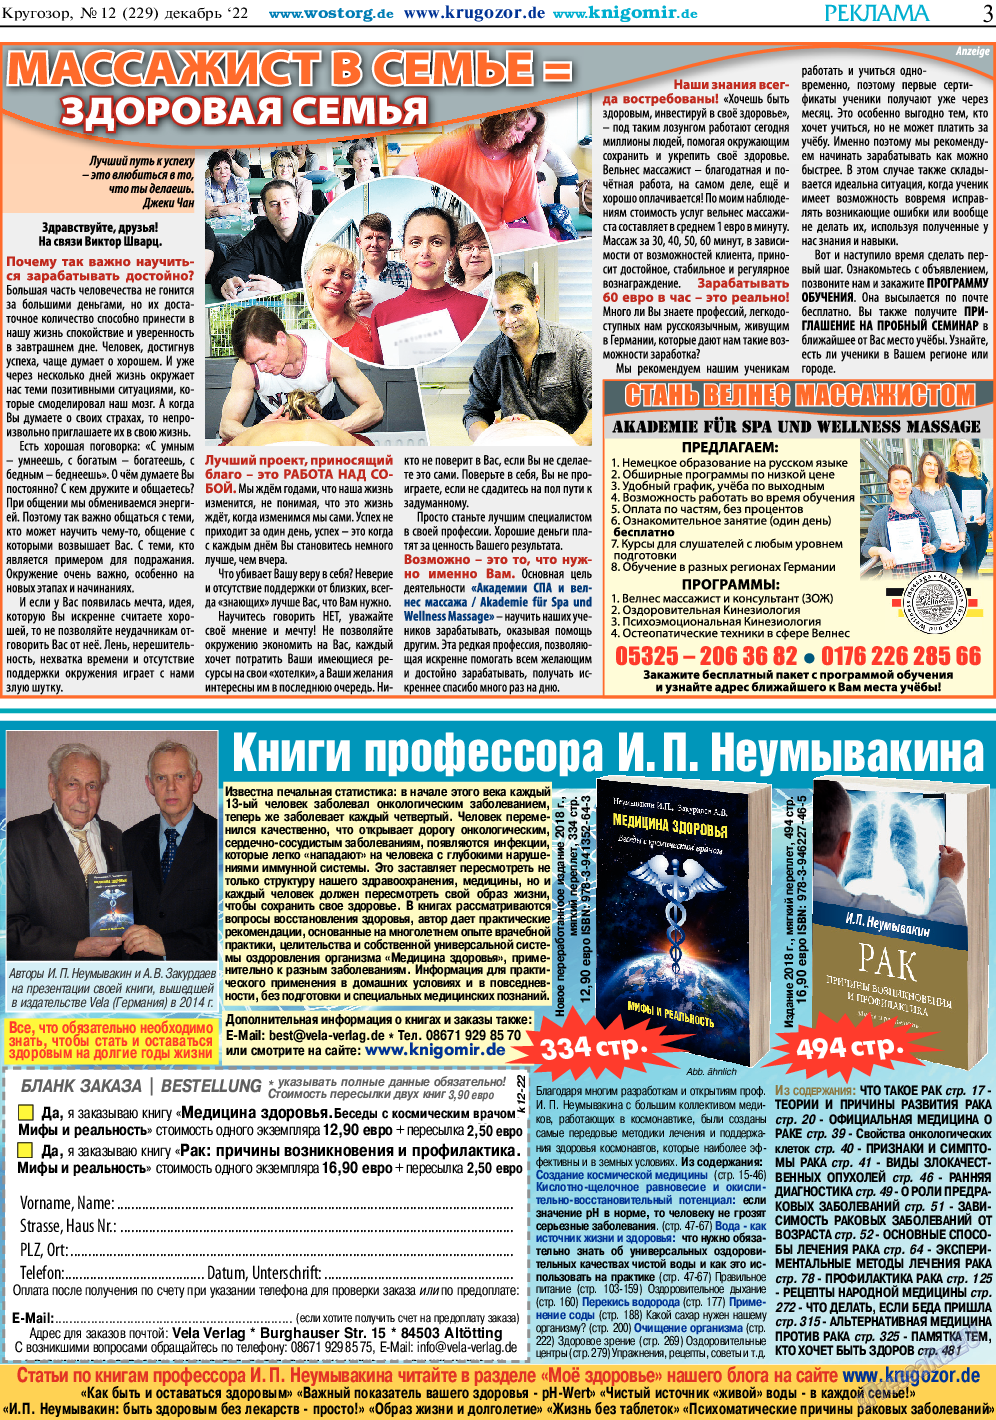 Кругозор, газета. 2022 №12 стр.3